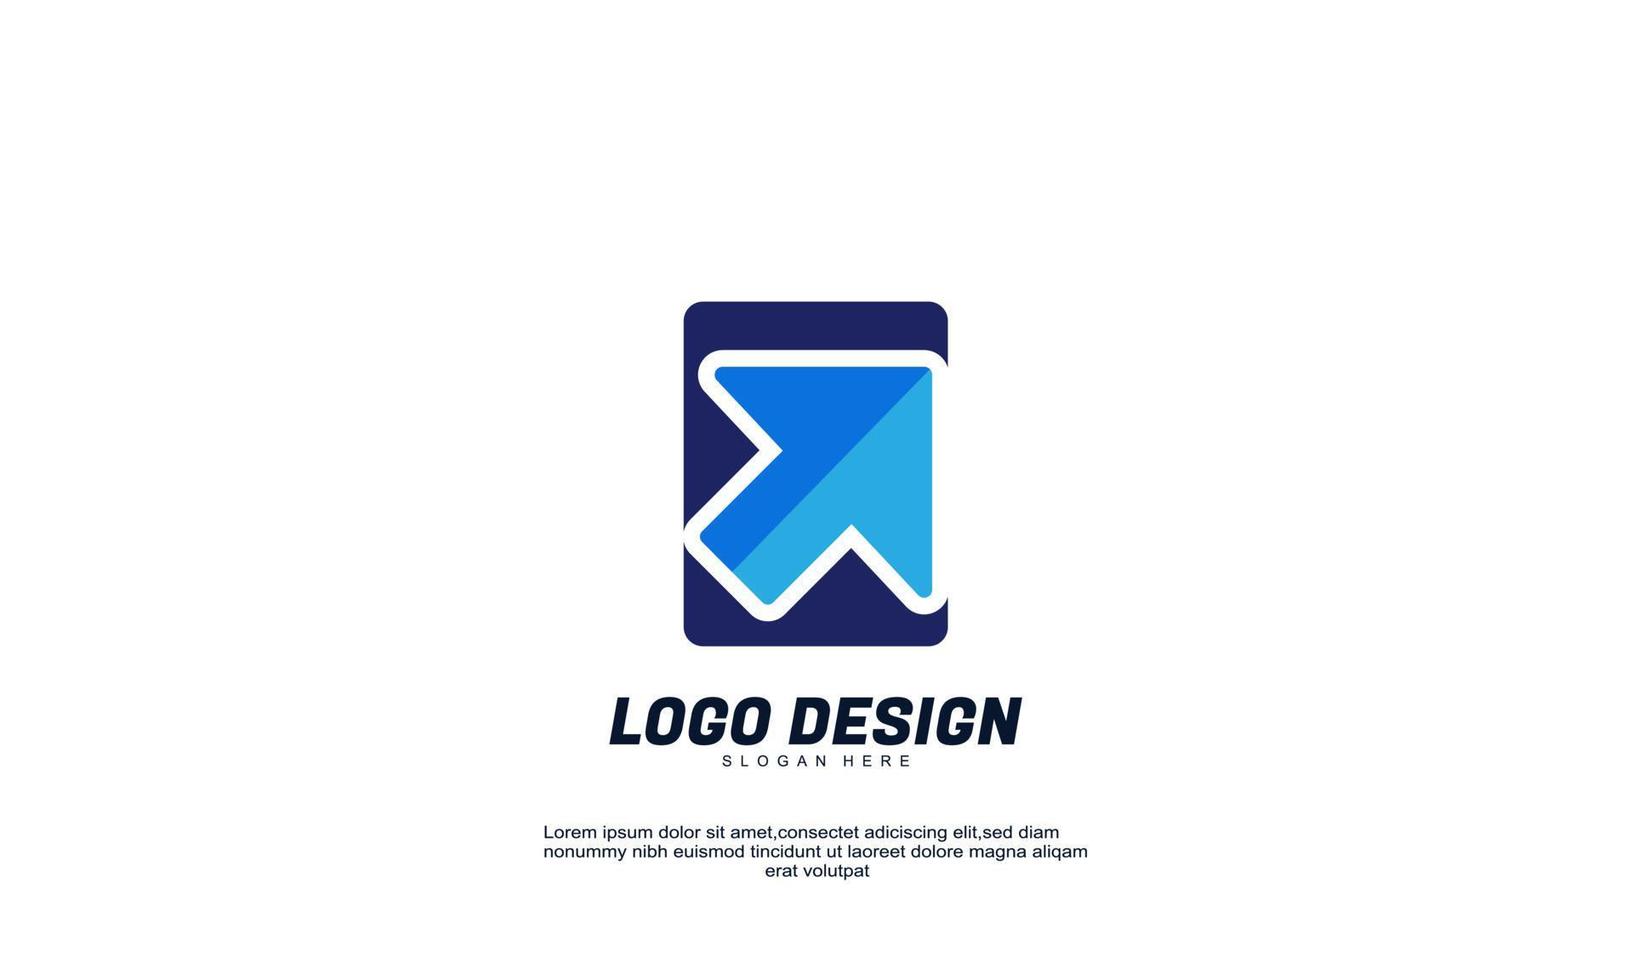 fantastische Idee Unternehmen Geschäft Rechteck Pfeil Logo Vektor Design abstraktes Emblem entwirft Konzept Logos Vorlage